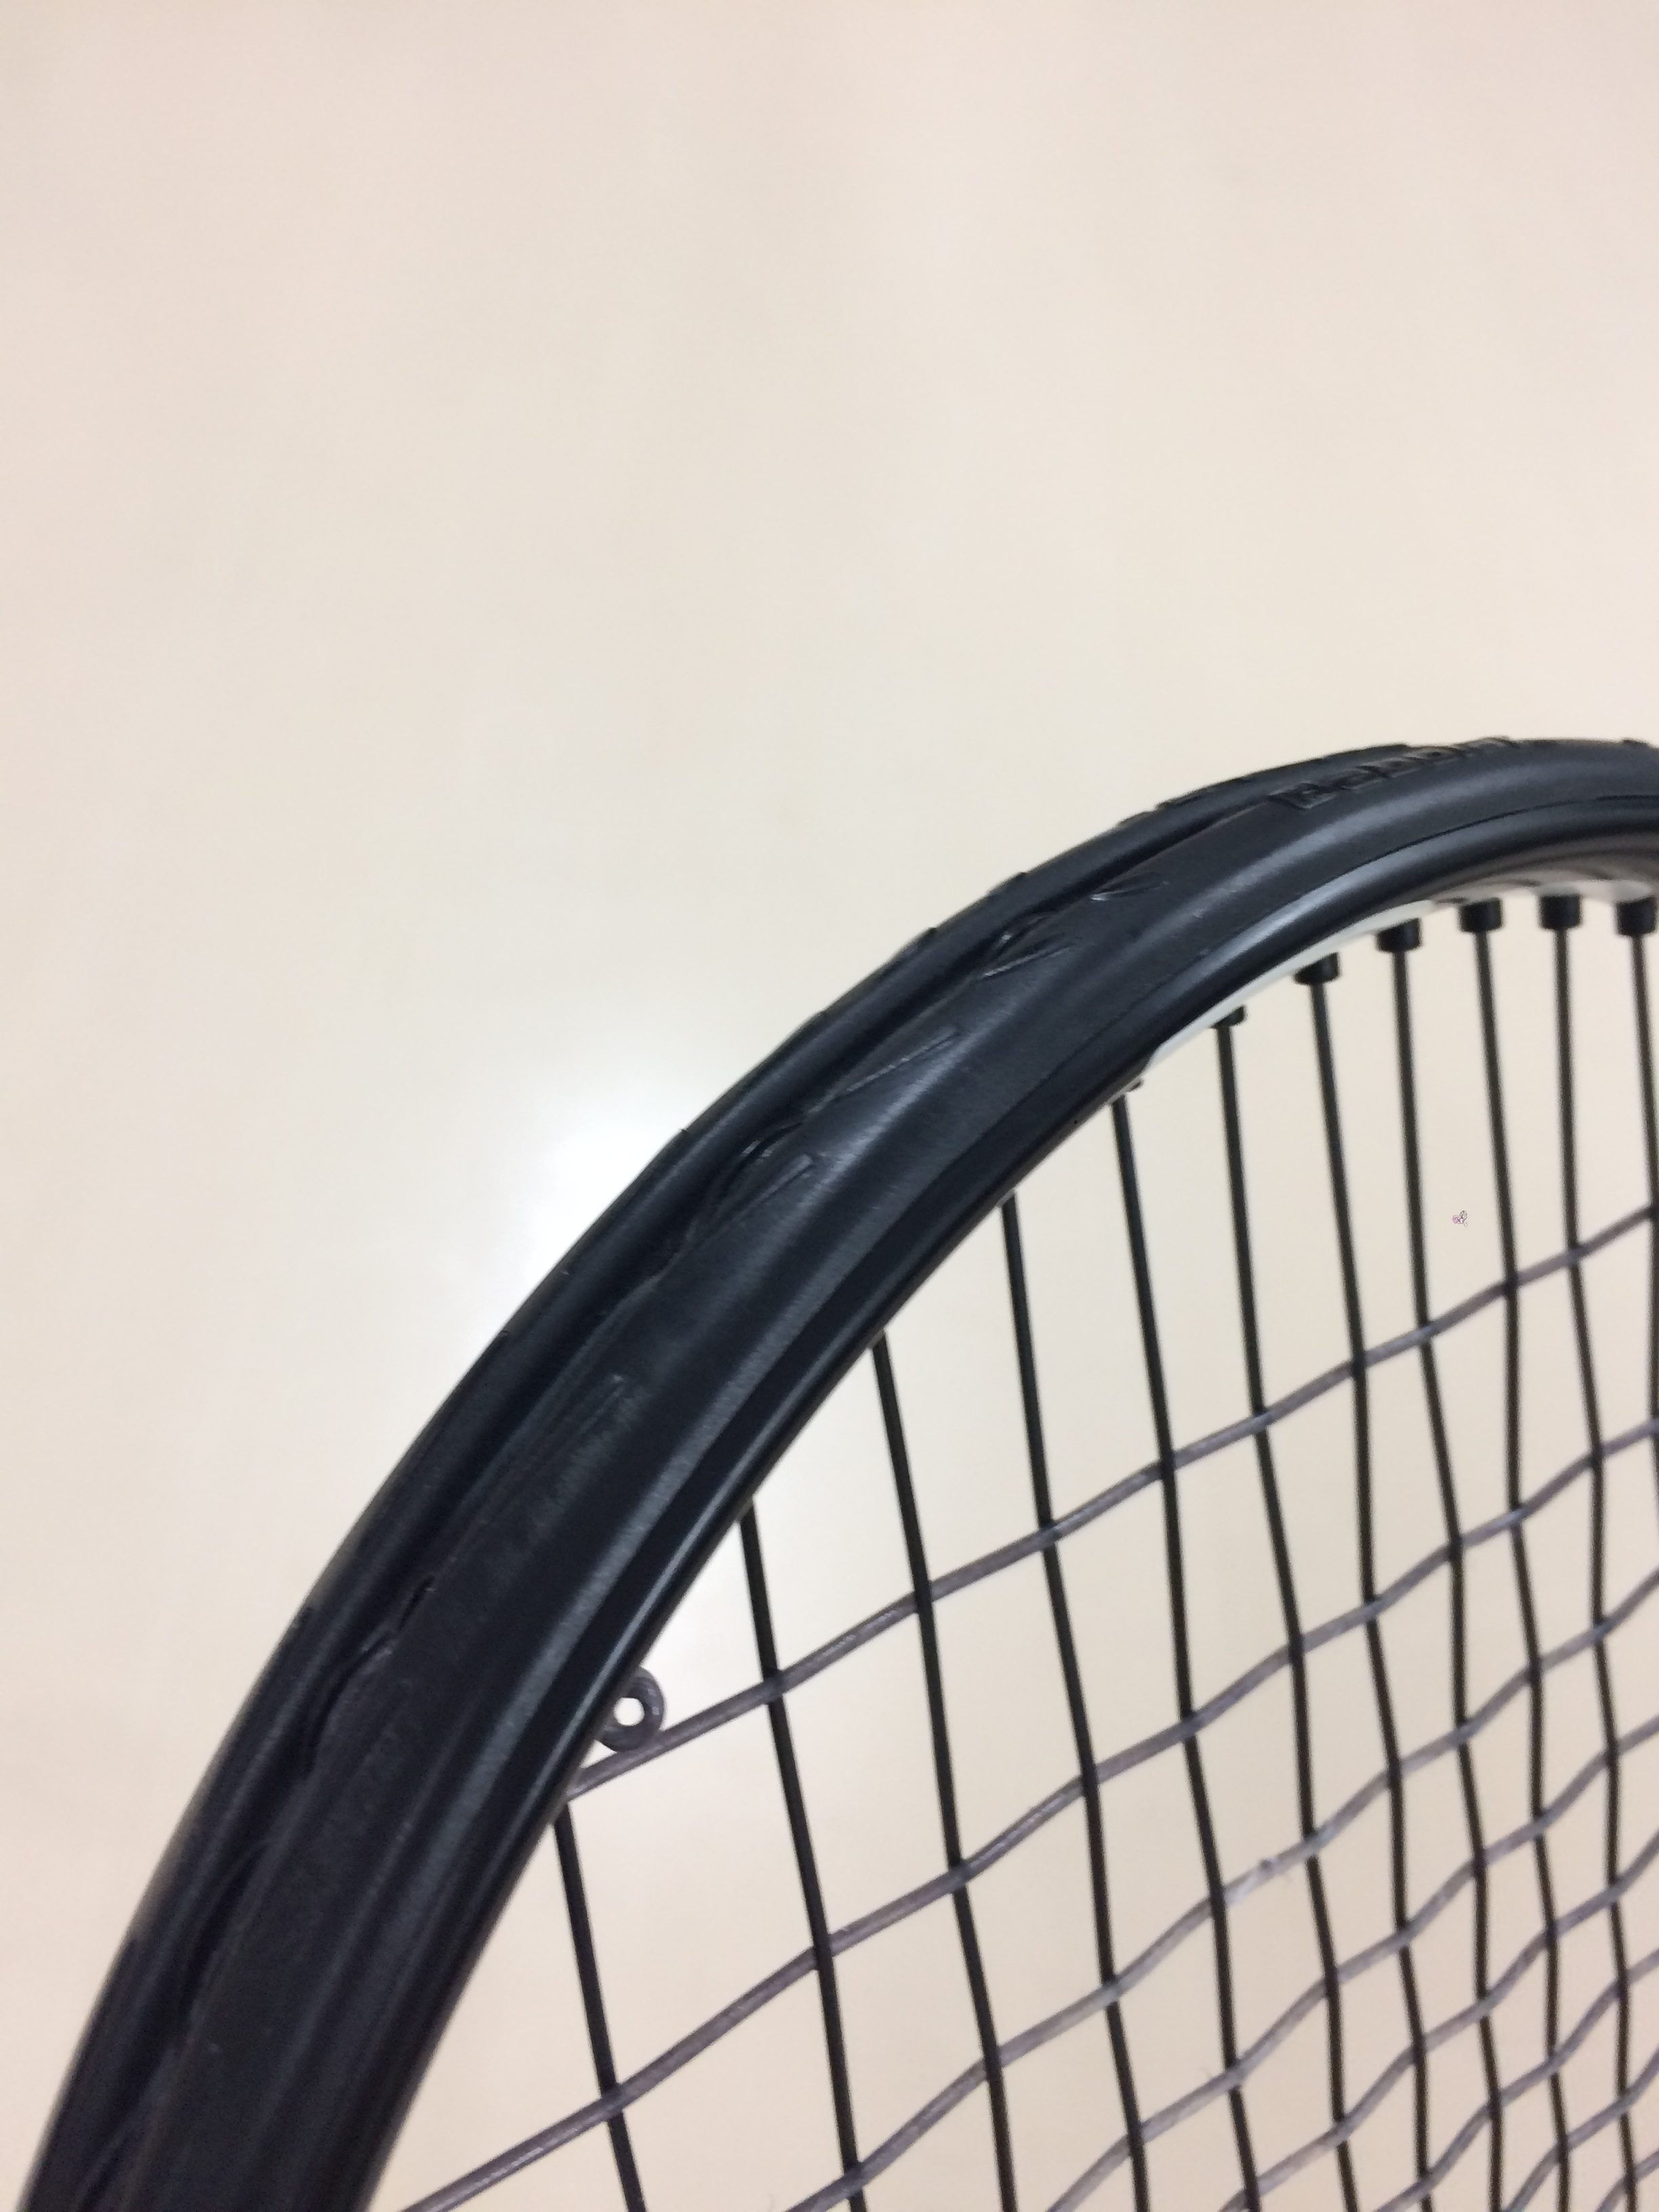 多角形ストリングの定番 テクニファイバー ブラックコード 評価 レビュー まとめ | おすすめテニスラケット講座